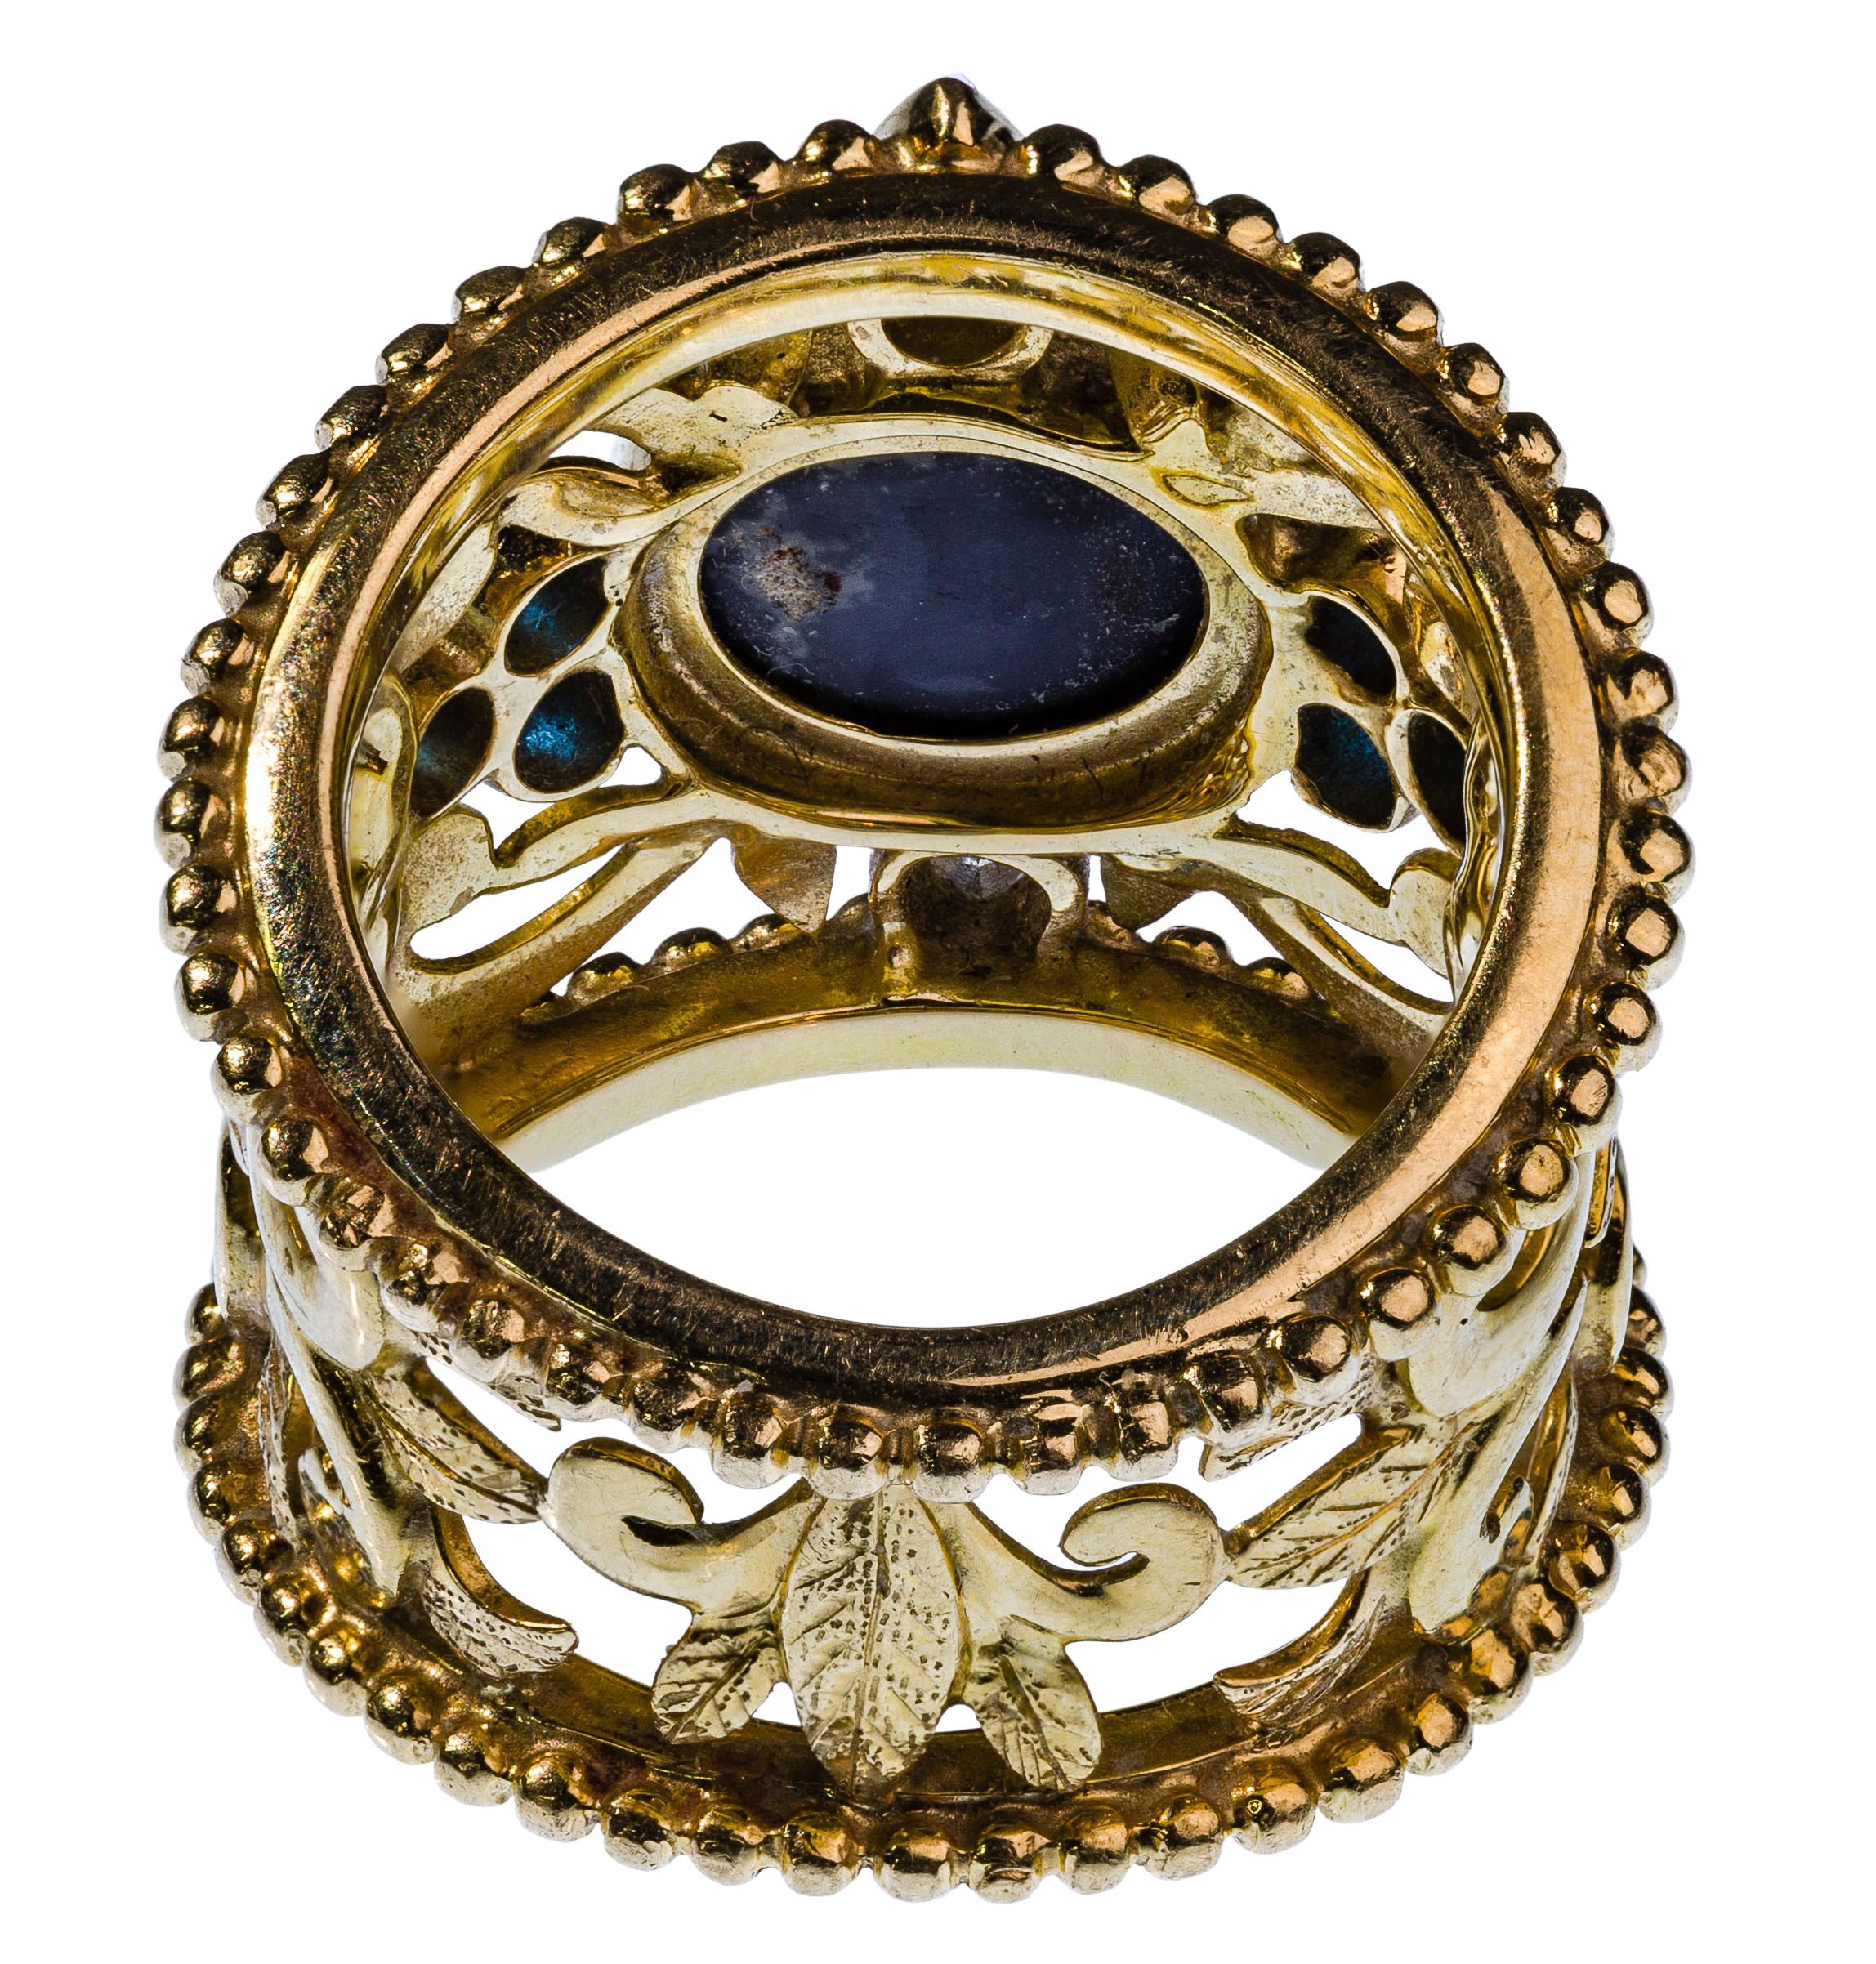 Magnifique anneau ouvert avec au centre une opale cabochon ovale flanquée en haut et en bas de diamants taille marquise et d'un triangle de (3) pierres précieuses bleues de chaque côté, cachet signé et marqué 